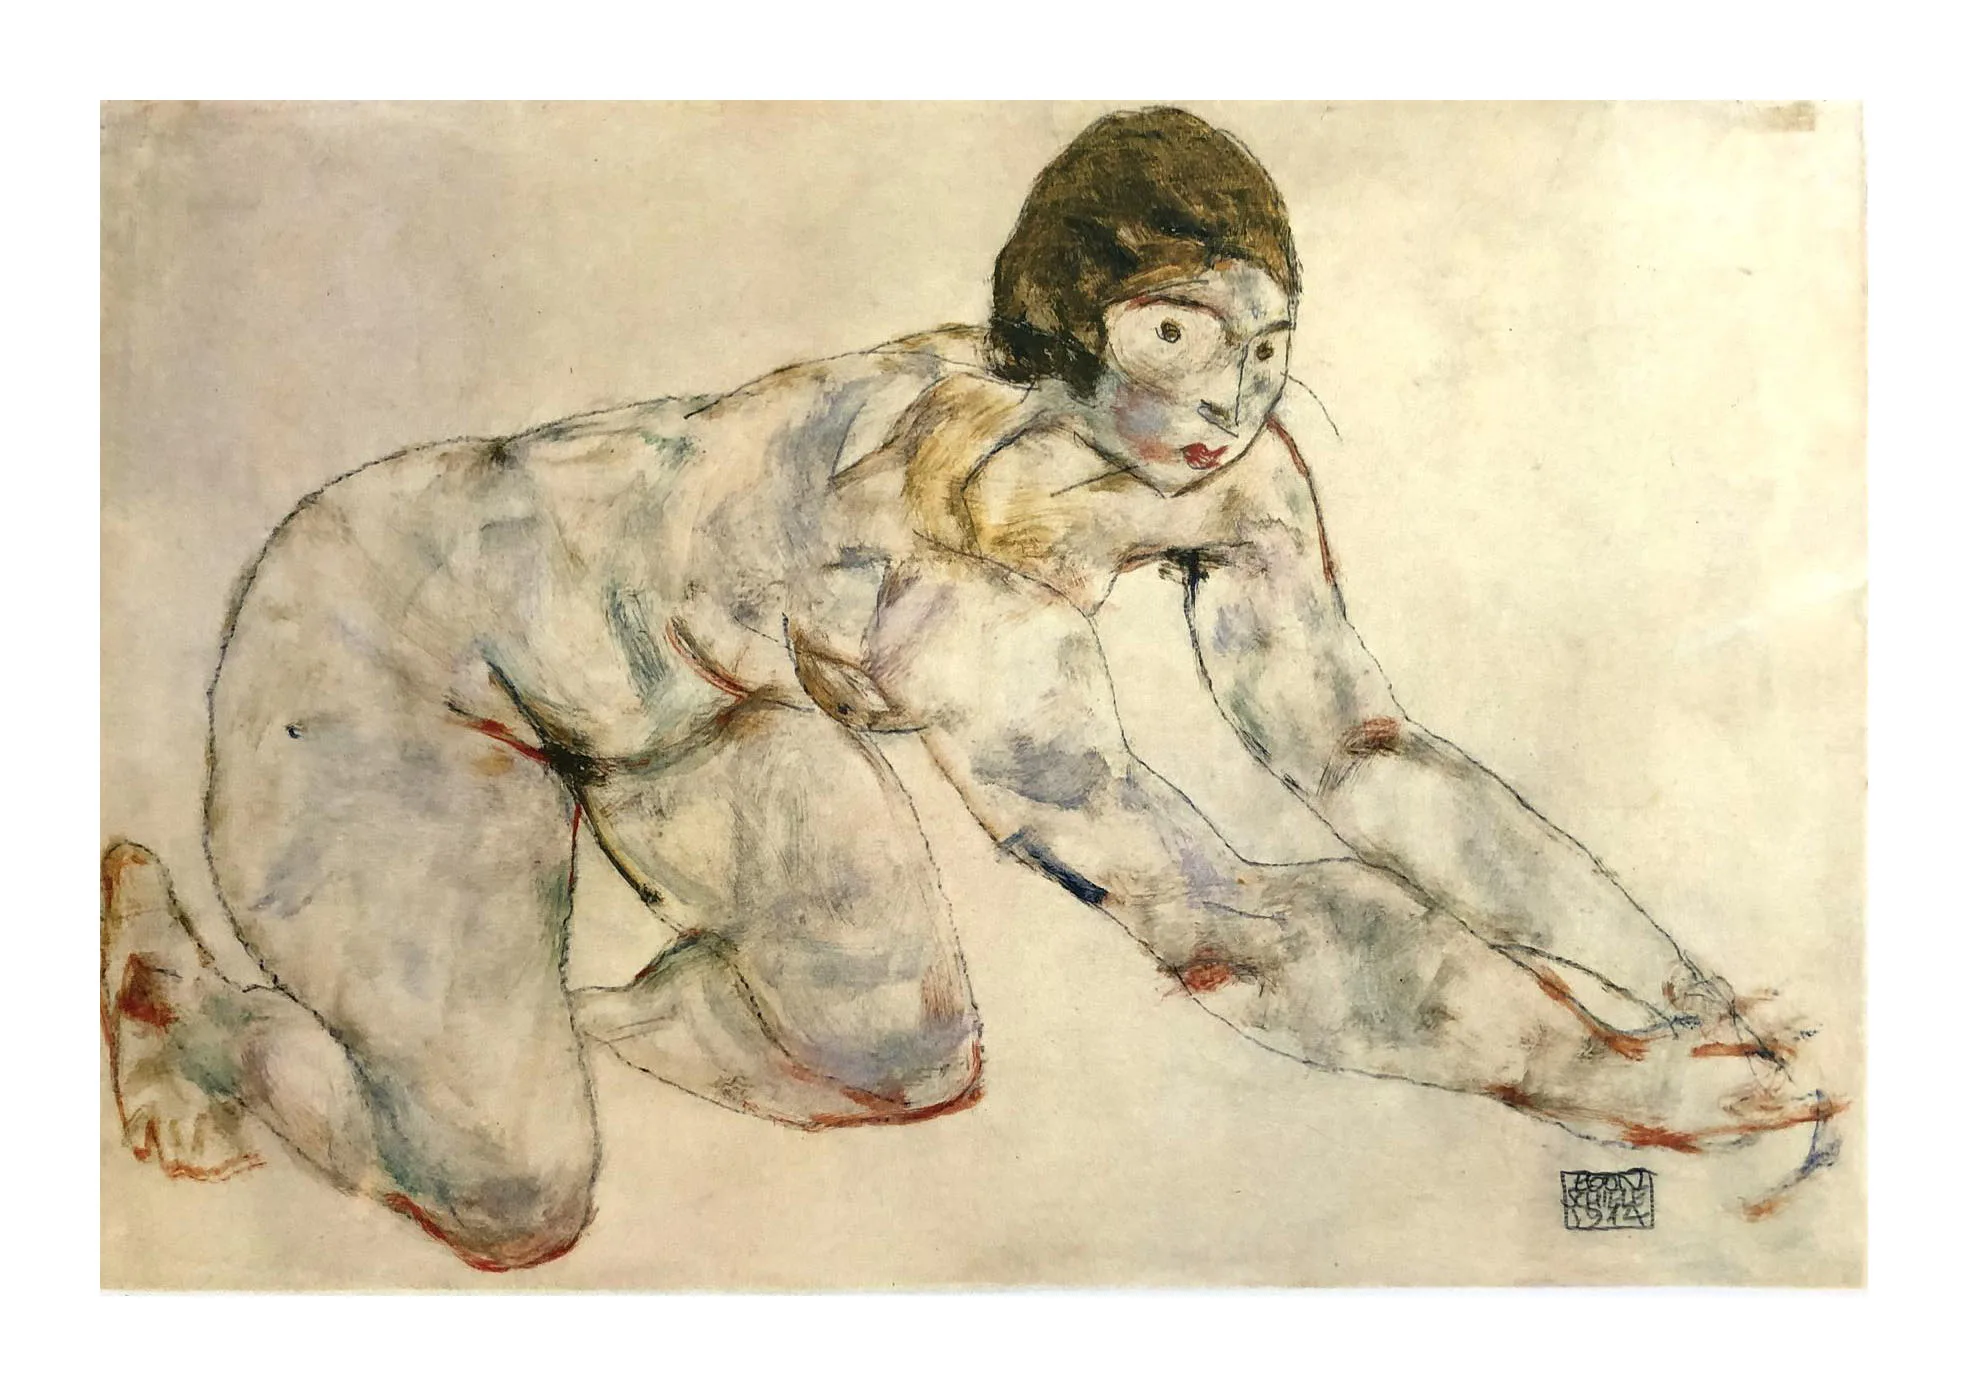 1981 Egon Schiele 29 Erotic Drawings kneeling Nude